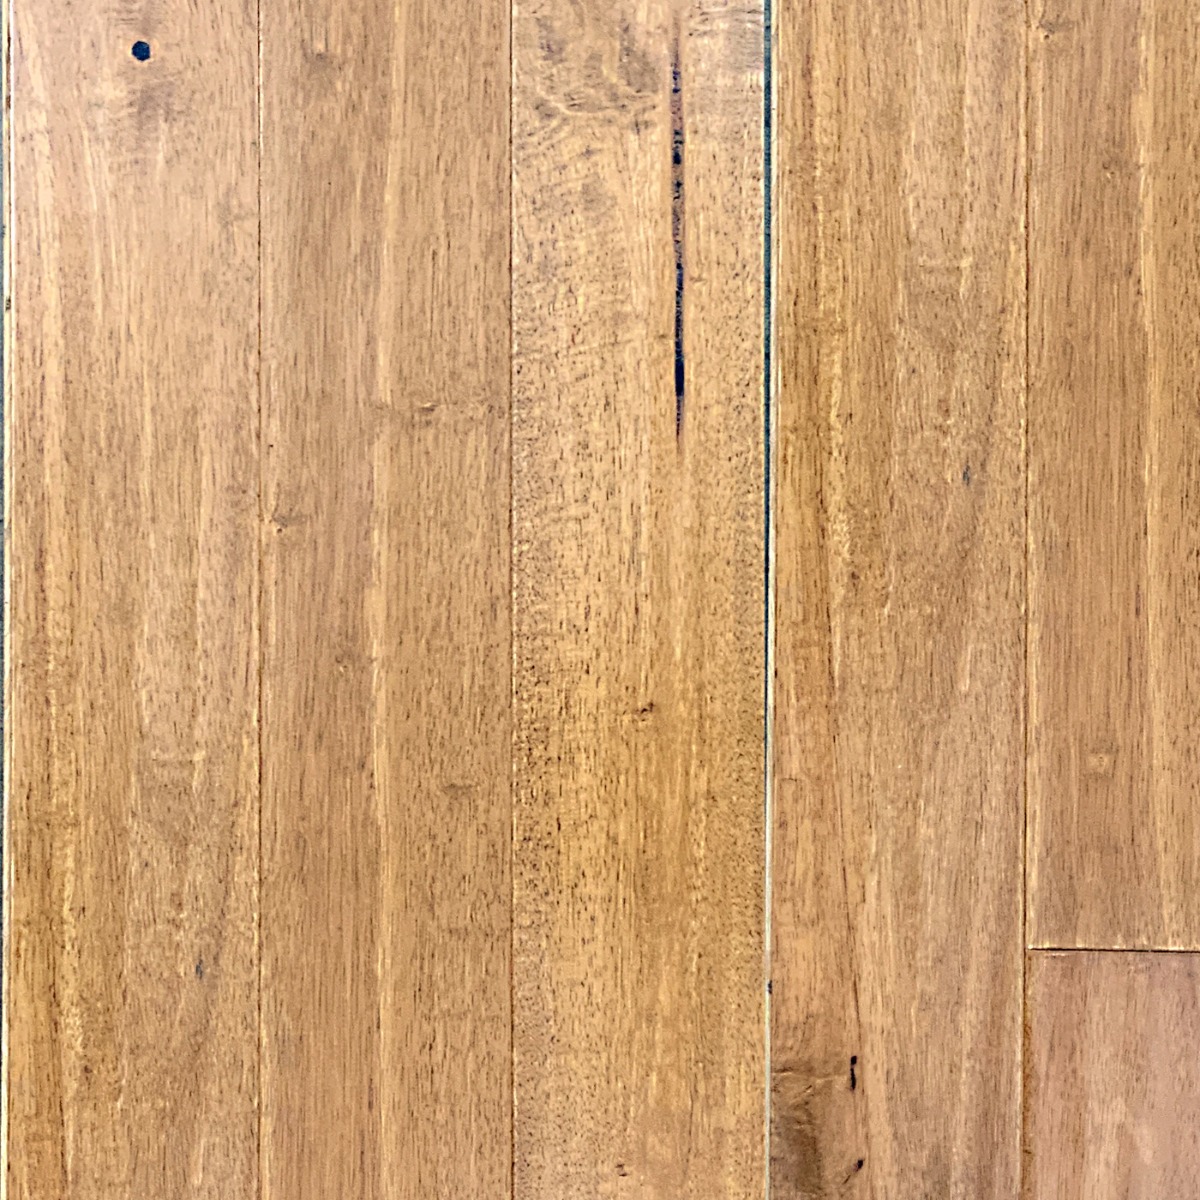 Phantim Hardwood Floor In Seabiscuit, Getz Hardwood Flooring